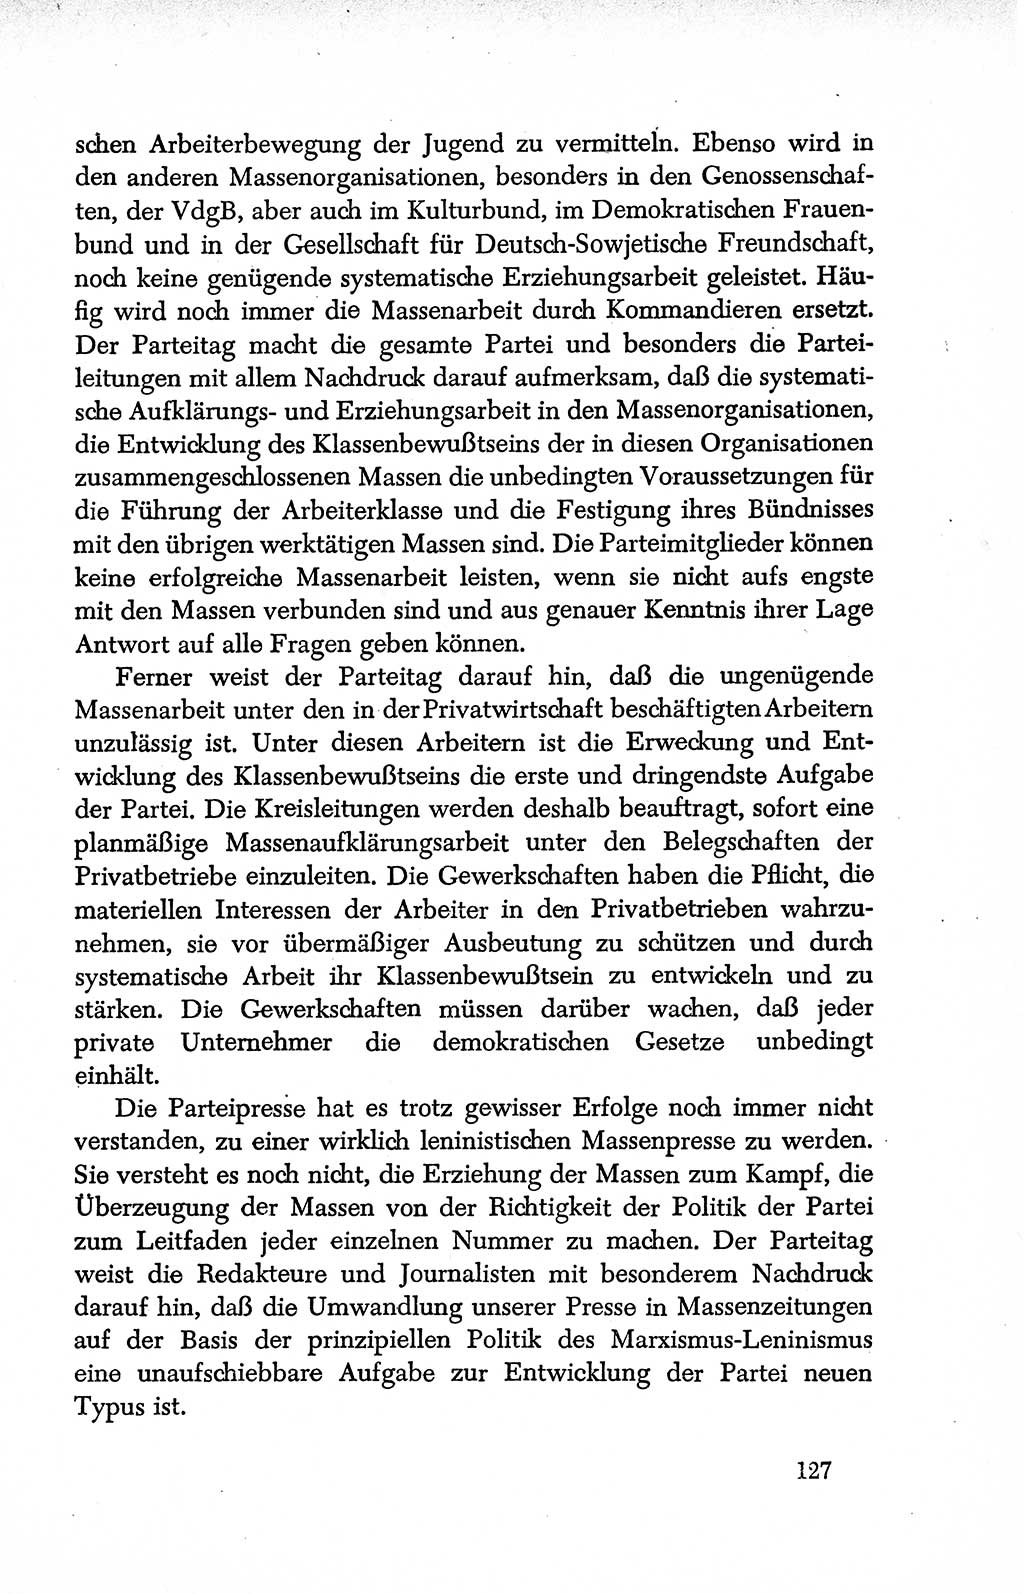 Dokumente der Sozialistischen Einheitspartei Deutschlands (SED) [Deutsche Demokratische Republik (DDR)] 1950-1952, Seite 127 (Dok. SED DDR 1950-1952, S. 127)